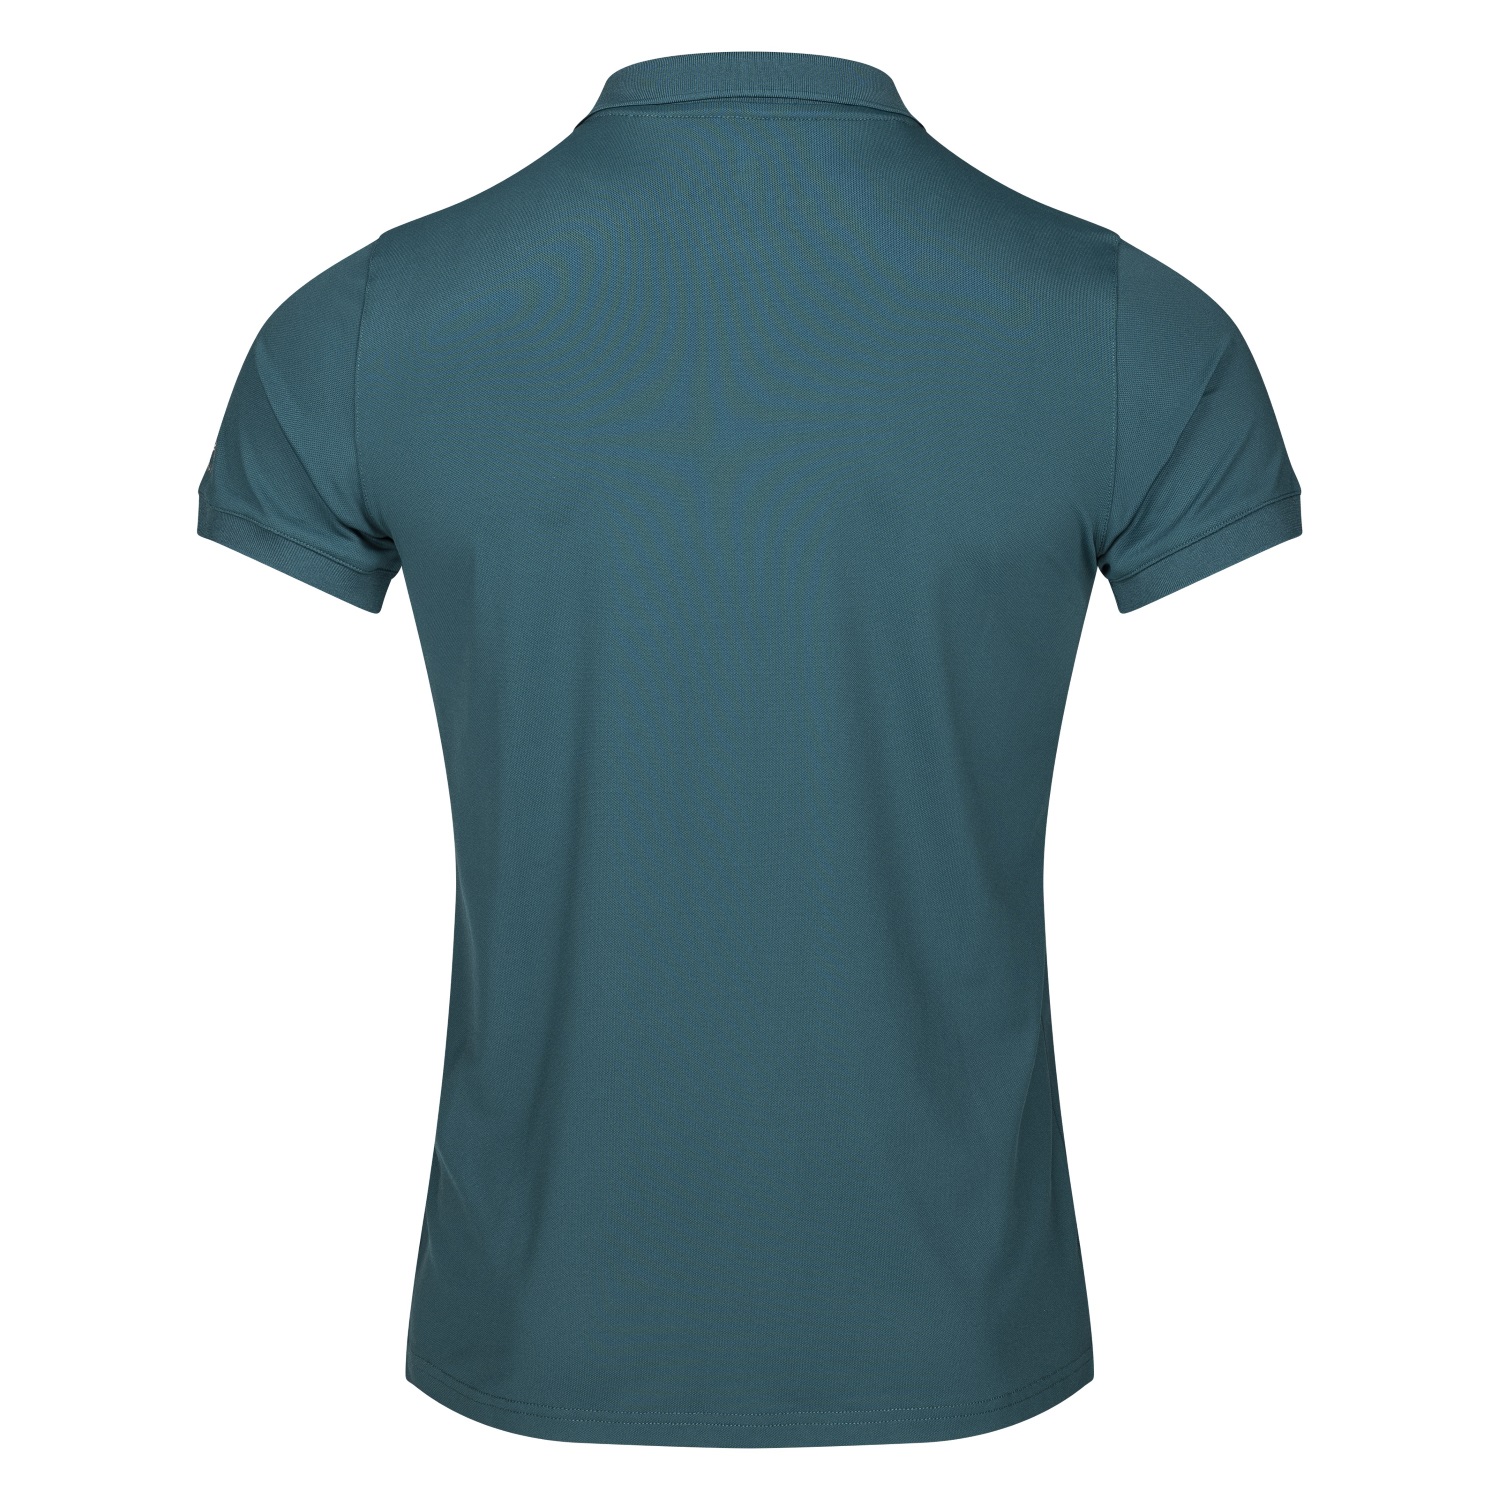 KINGSLAND Classic Limited Herren Pique Polo Shirt - green deep - XL - 2